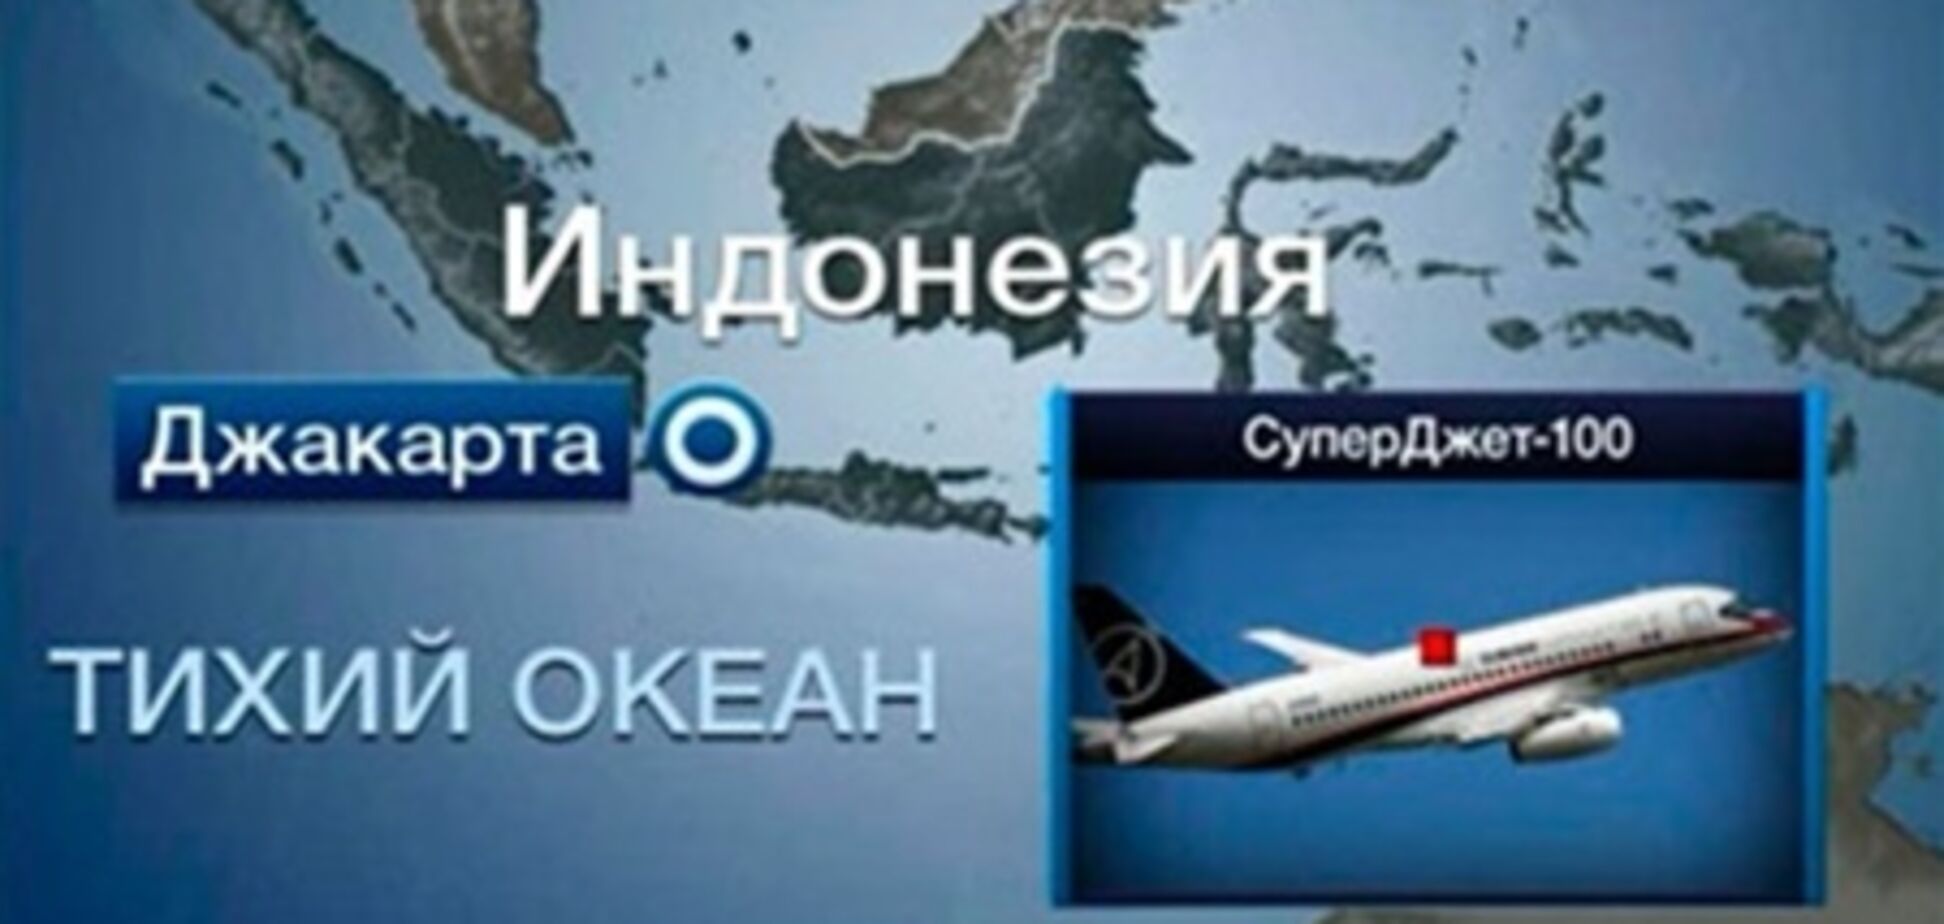 Среди пассажиров SSJ-100 украинцев не было - МИД